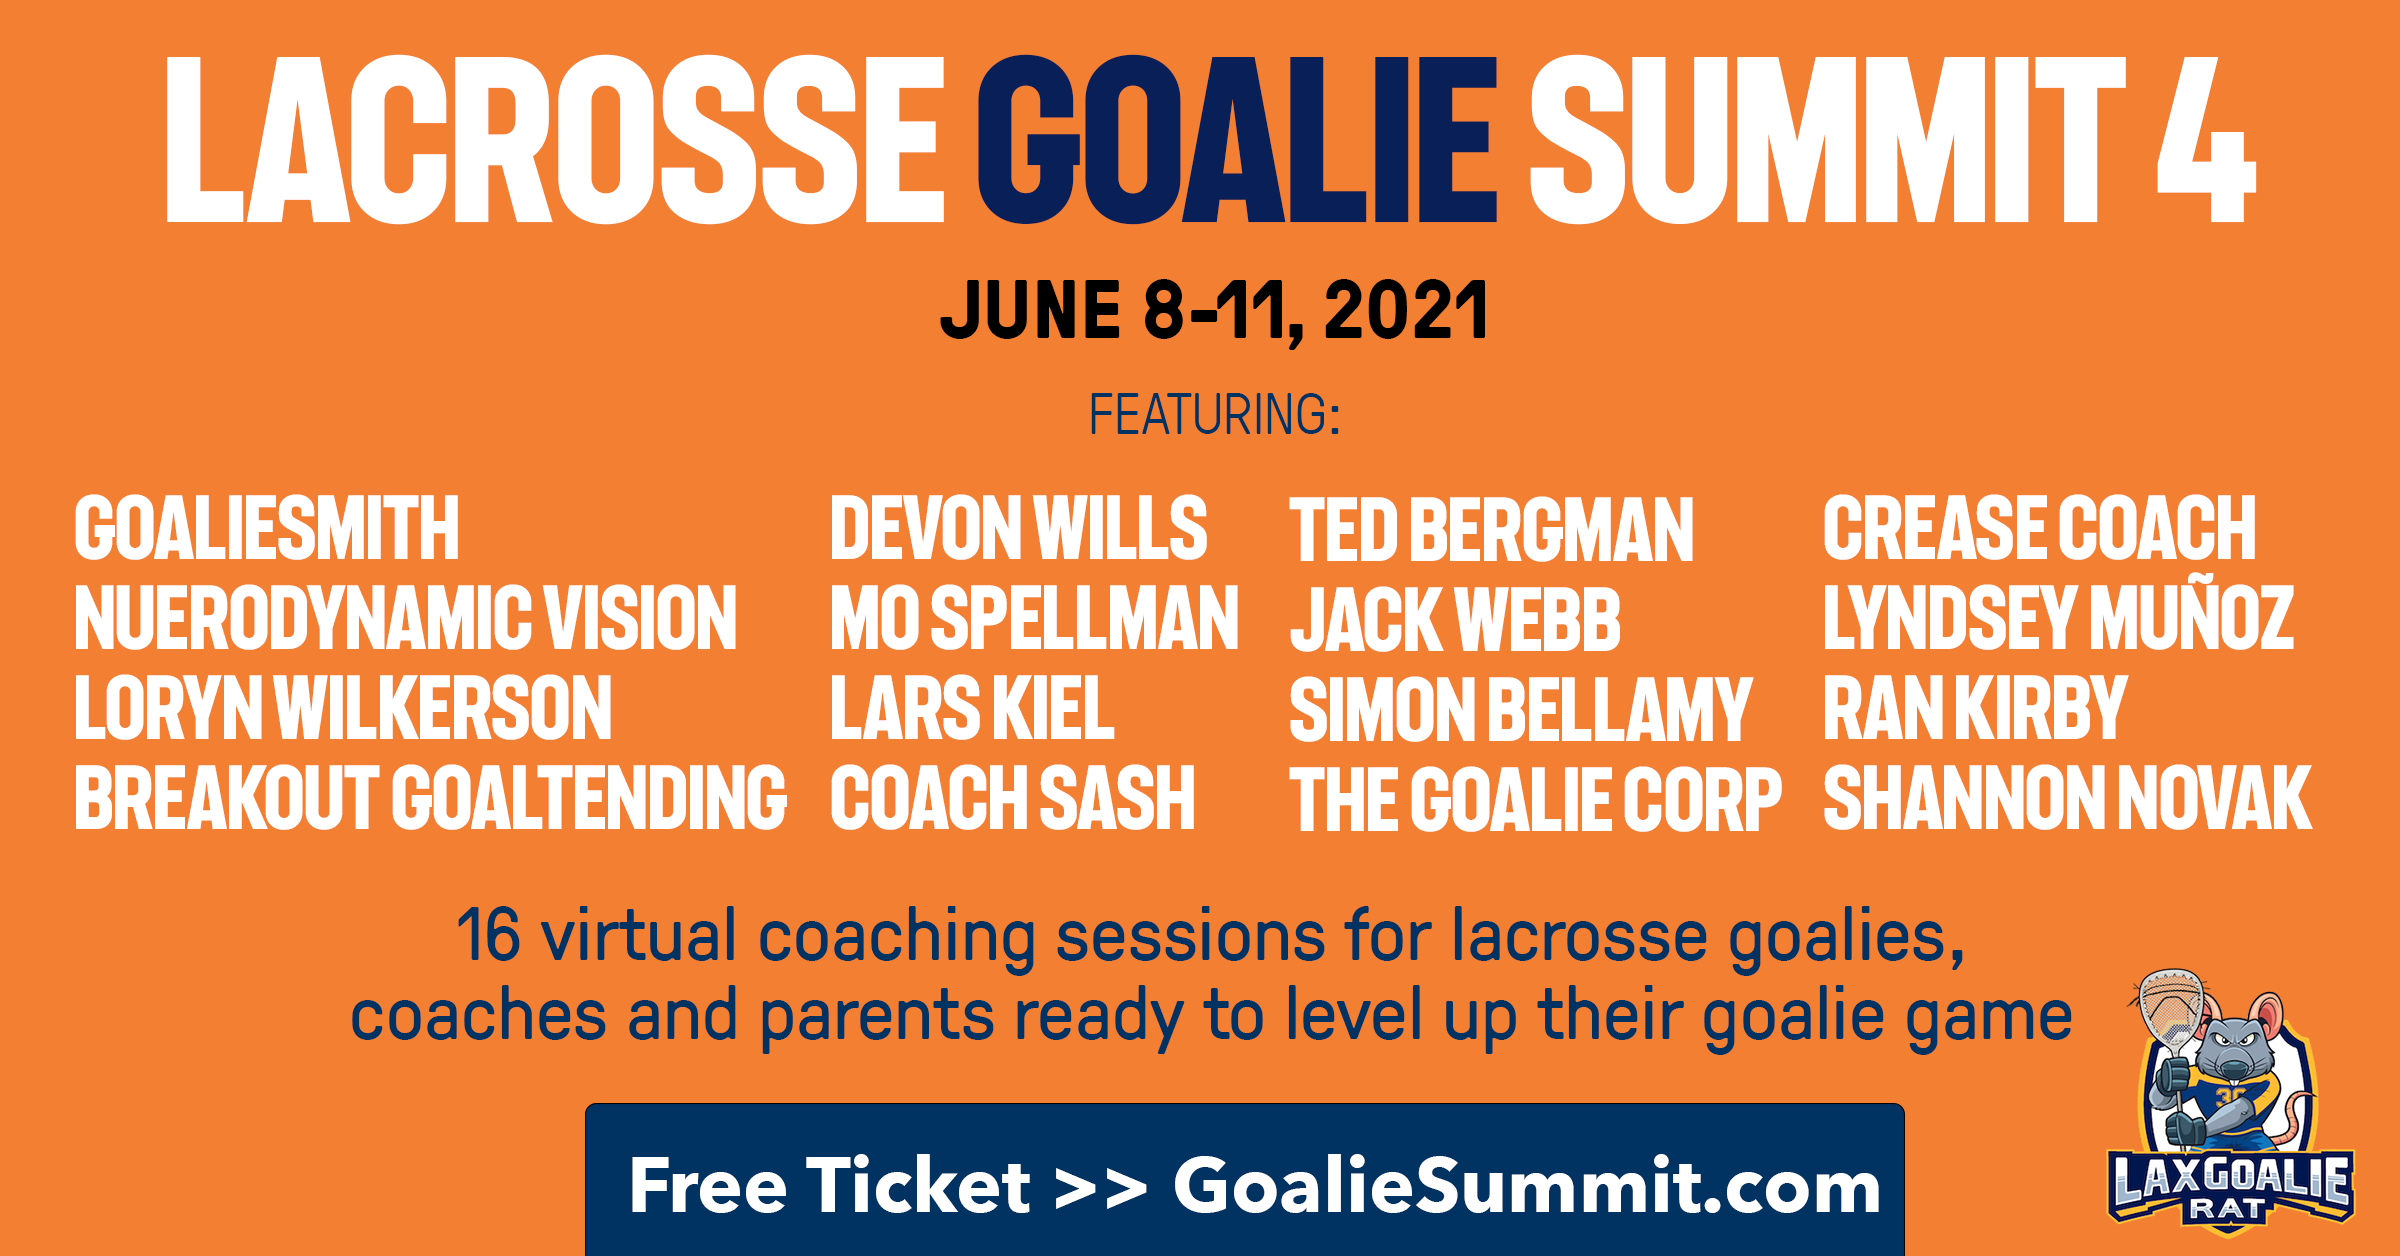 Lacrosse Goalie Summit 4